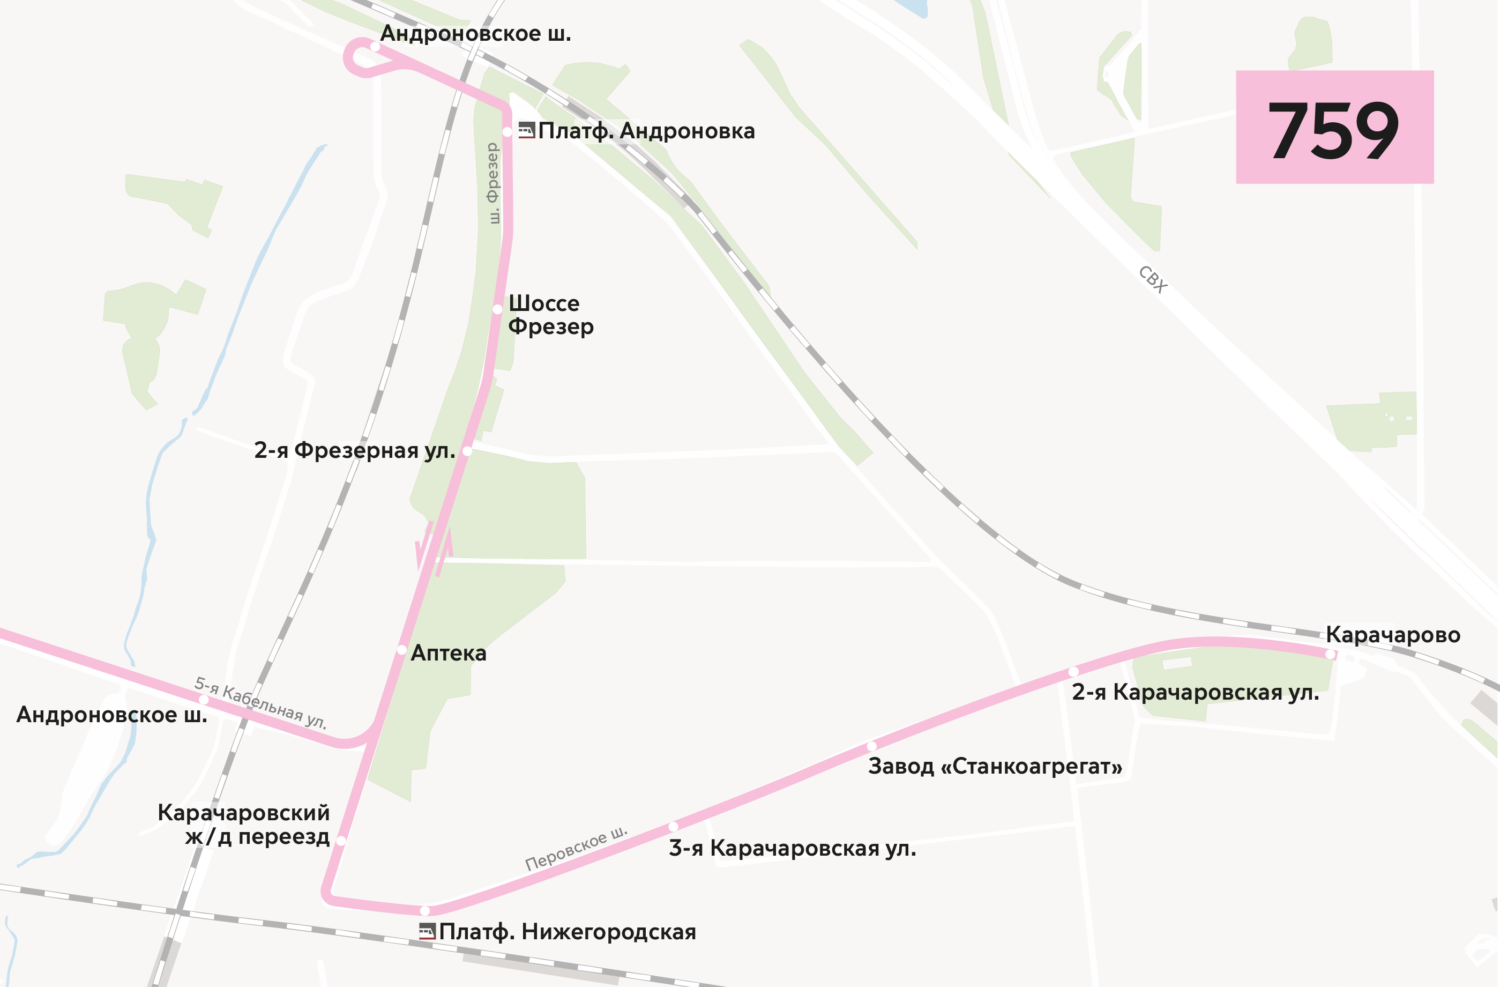 Маршруты автобусов изменятся в районе станции МЦК "Андроновка"